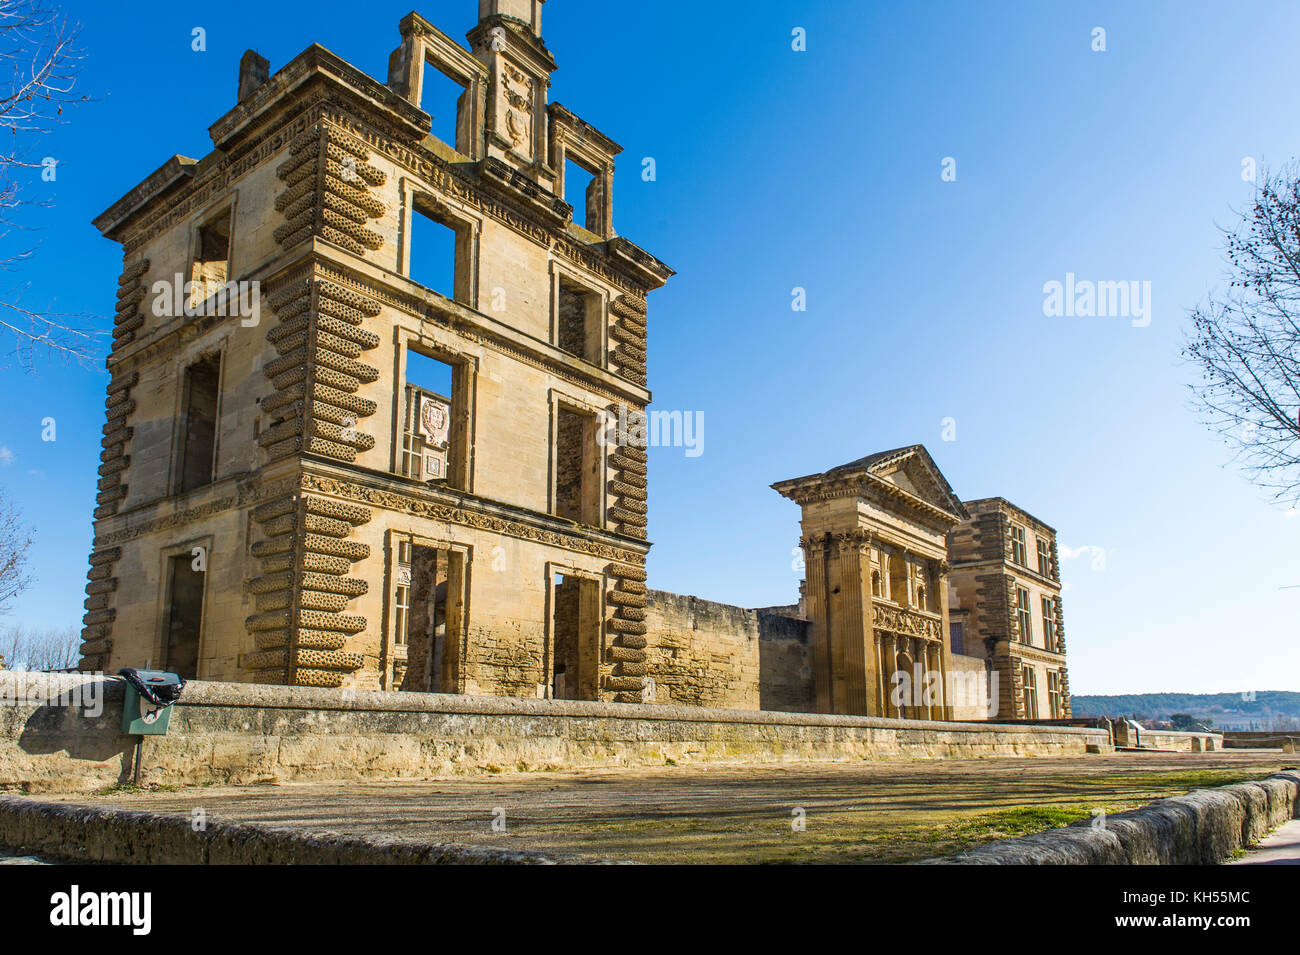 Europa, Frankreich, Vaucluse, Luberon, La Tour-d'Aigues. Die Fassade des Schlosses. Stockfoto